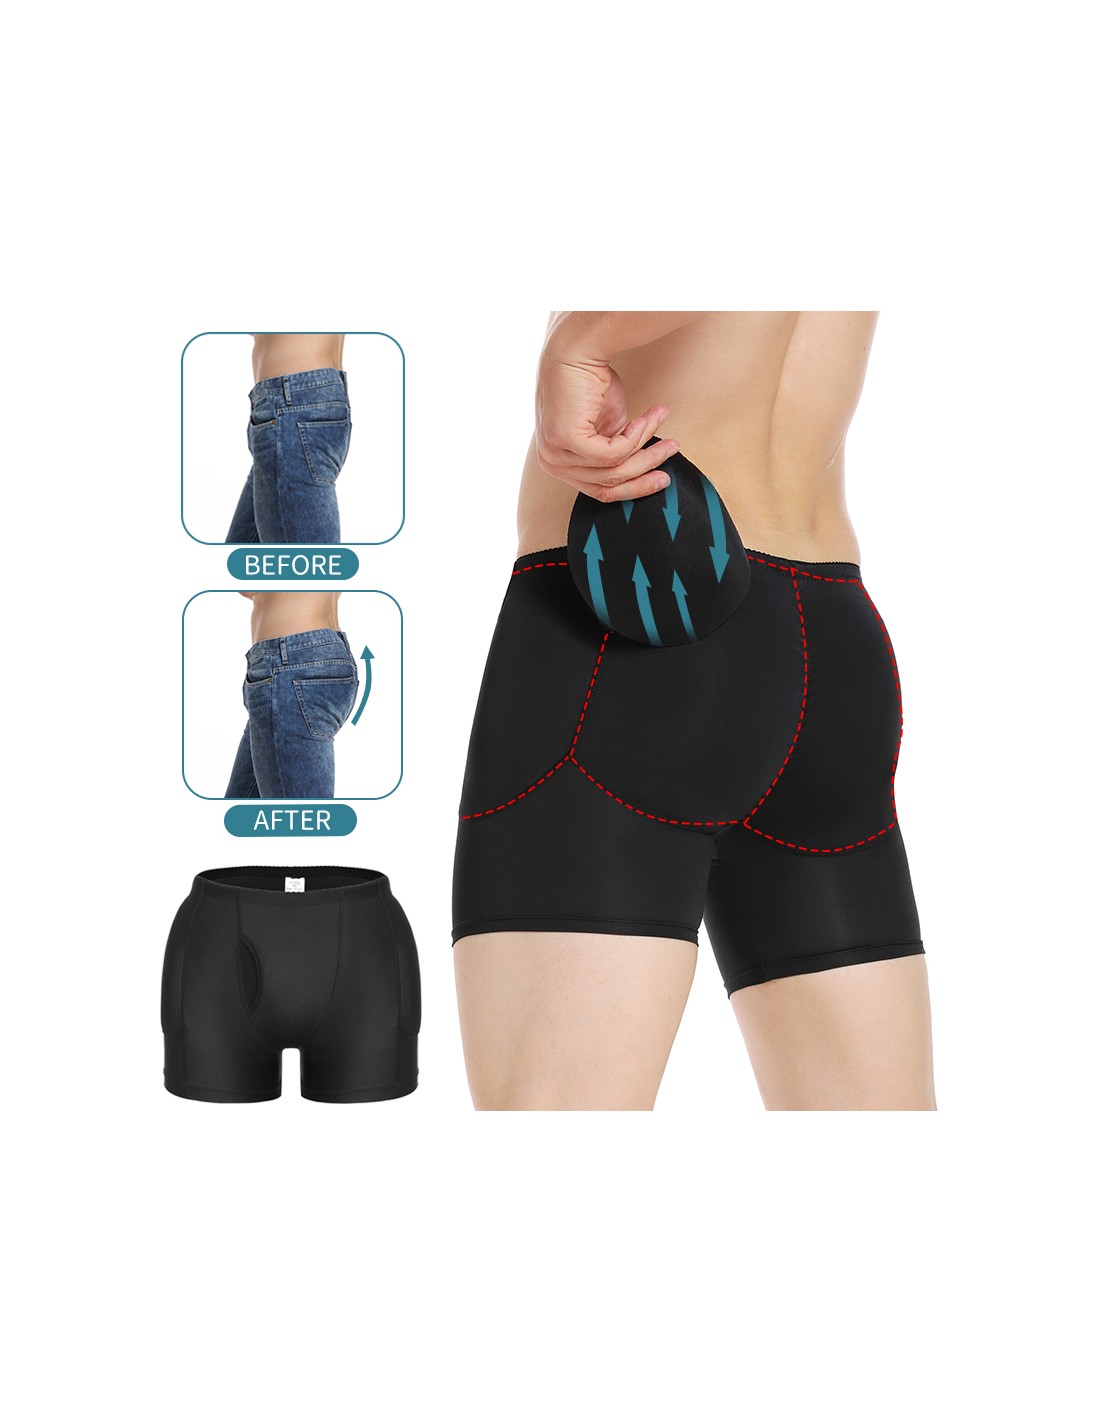 Mens Padded Underwear Butt Lifter Hips Enhancer Fajas Boxer Briefs